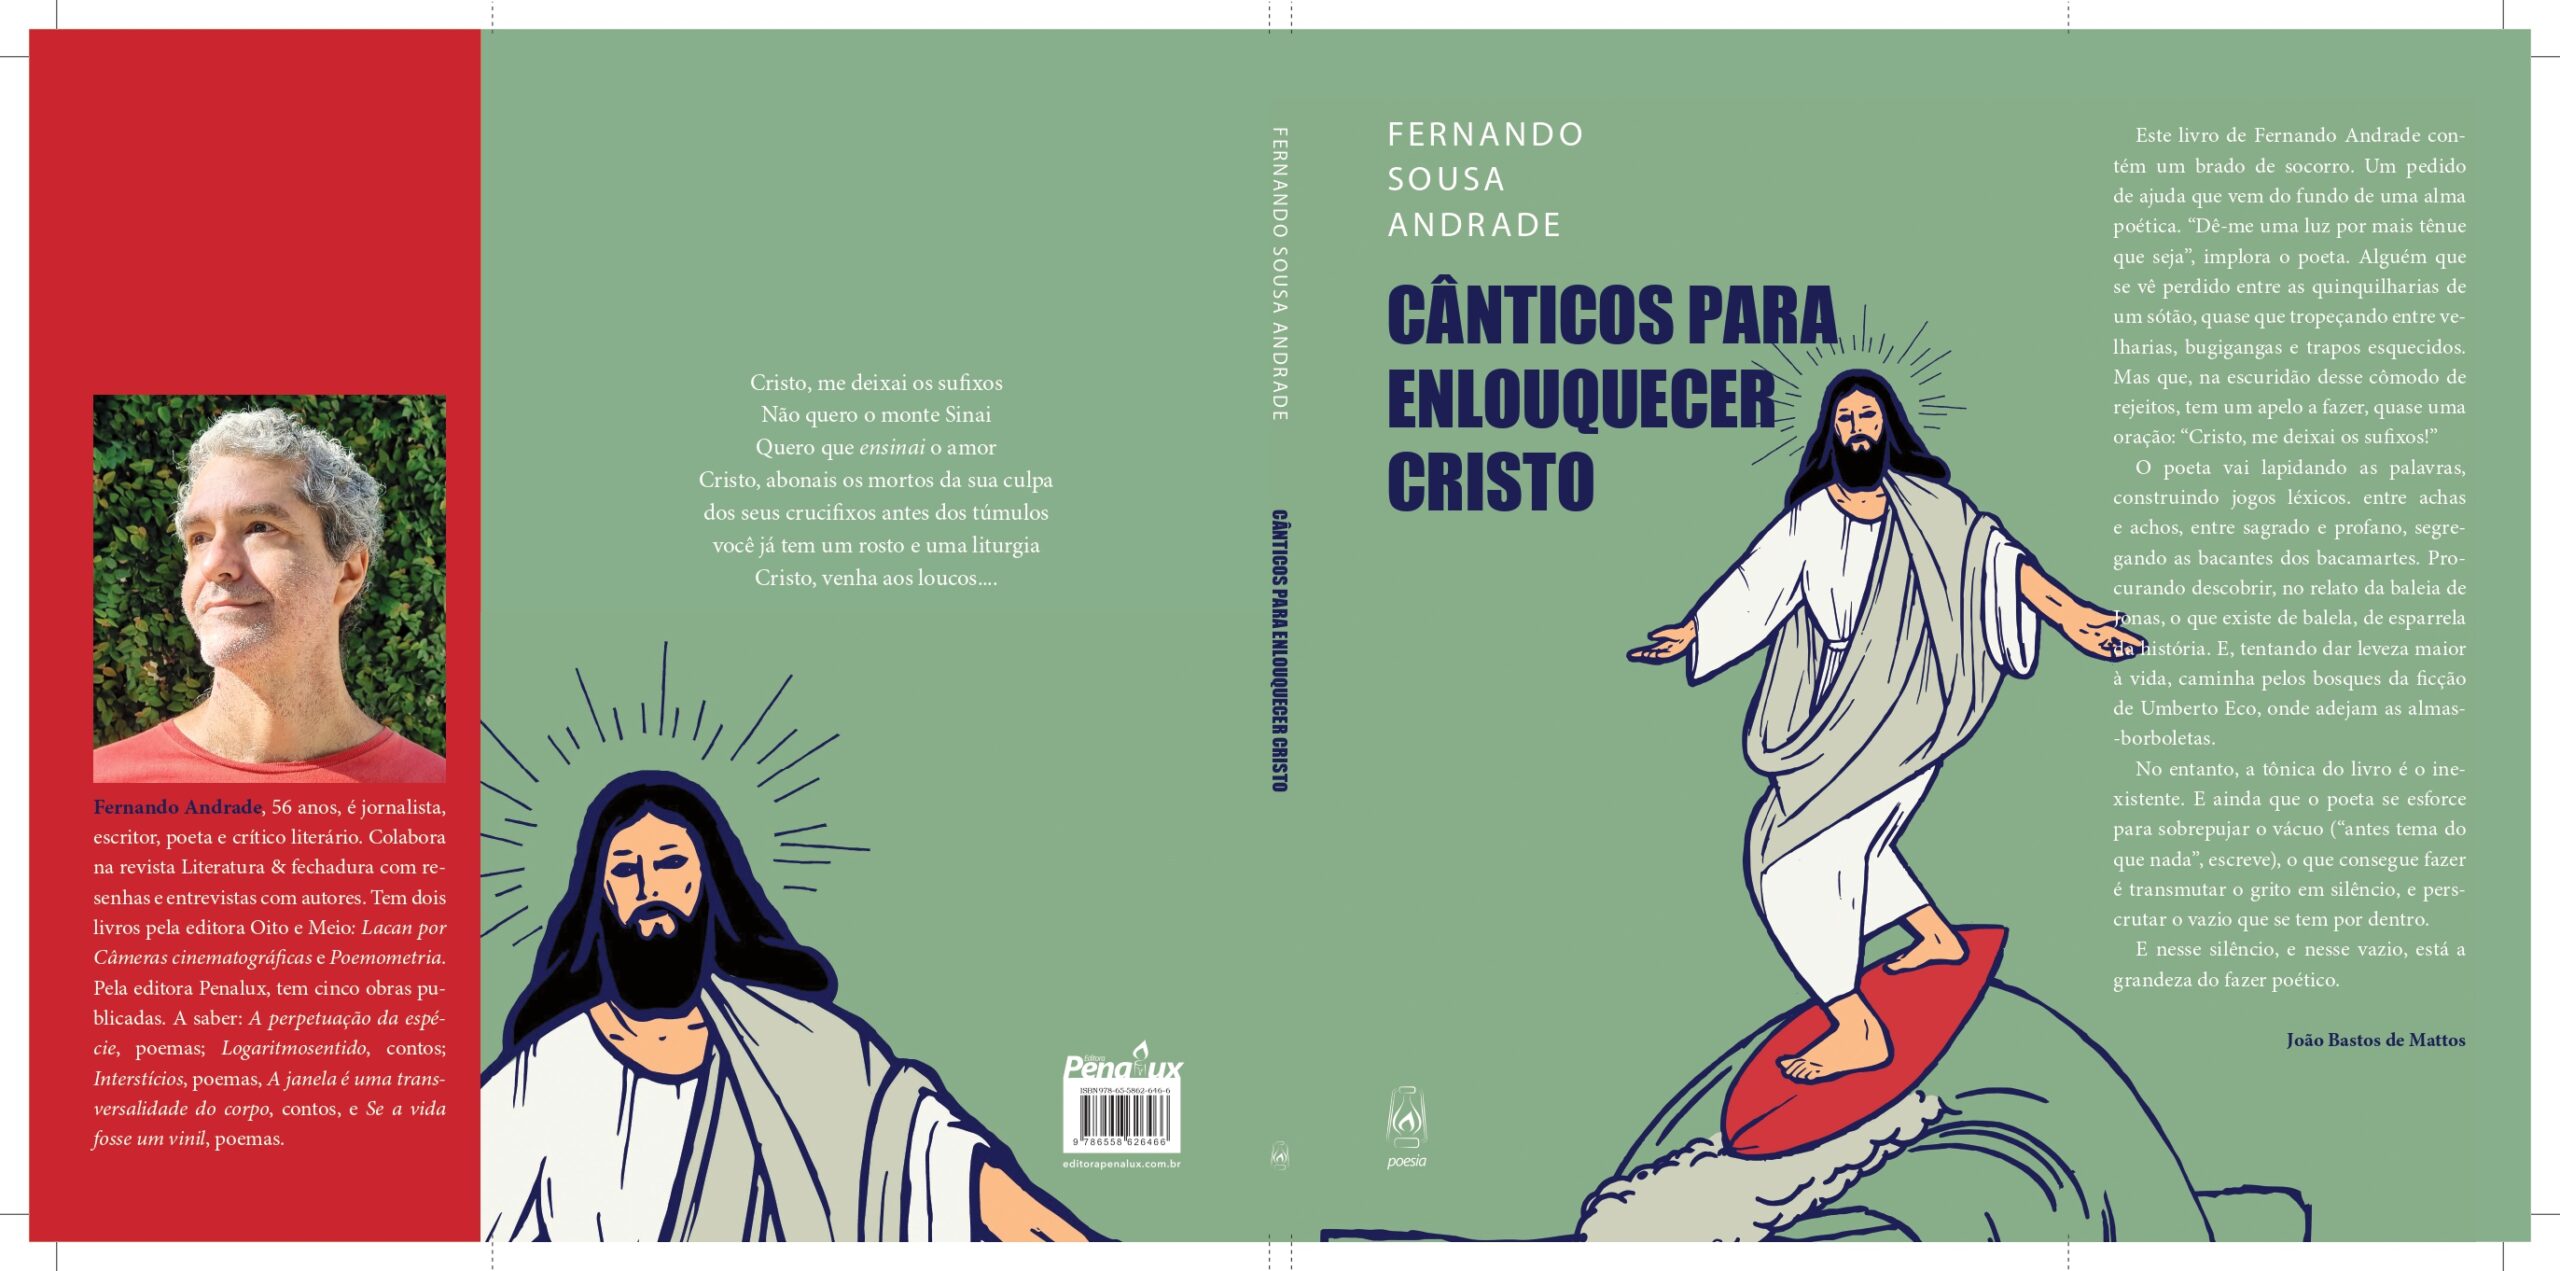 Fernando Sousa Andrade JPG scaled - Algumas palavras sobre a poesia de Fernando Andrade | Leonardo Almeida Filho